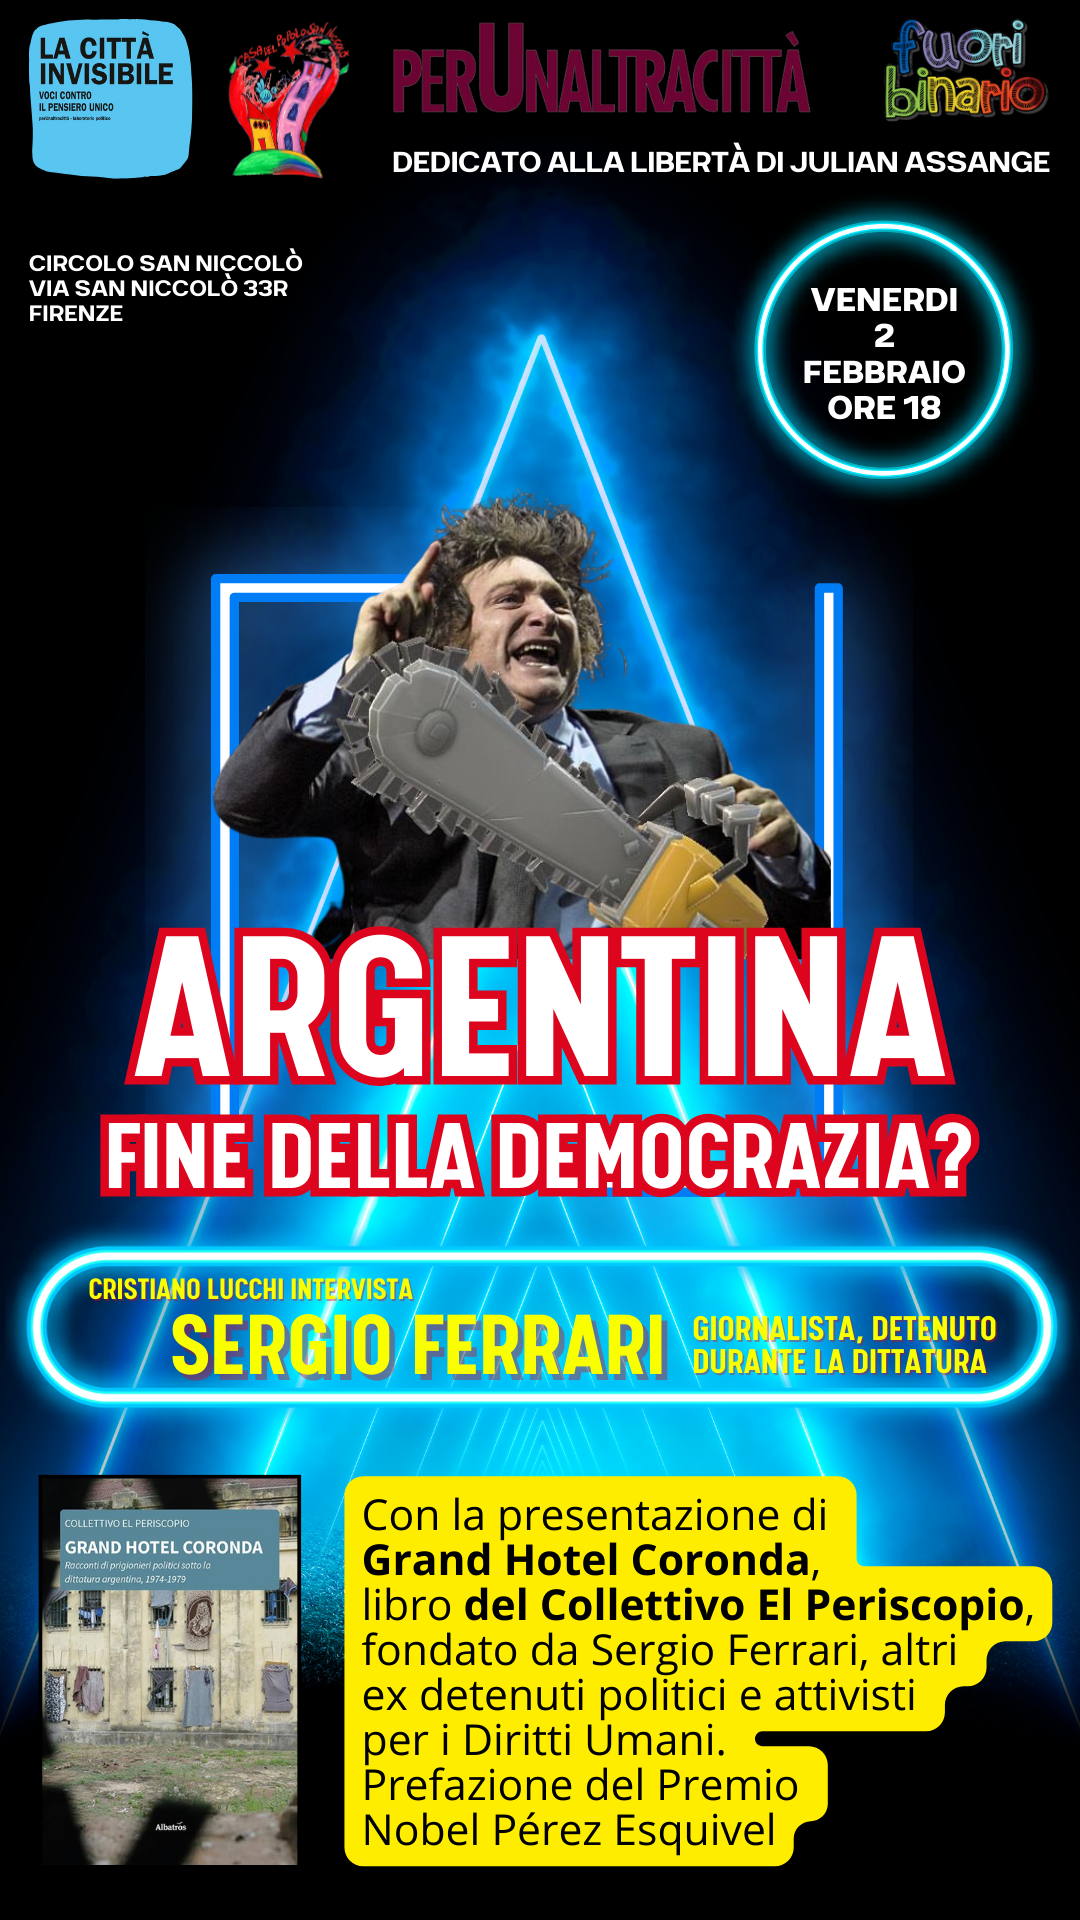 Argentina, democrazia in pericolo? Incontro venerdì 2 febbraio con Sergio Ferrari, giornalista ed ex detenuto di Videla